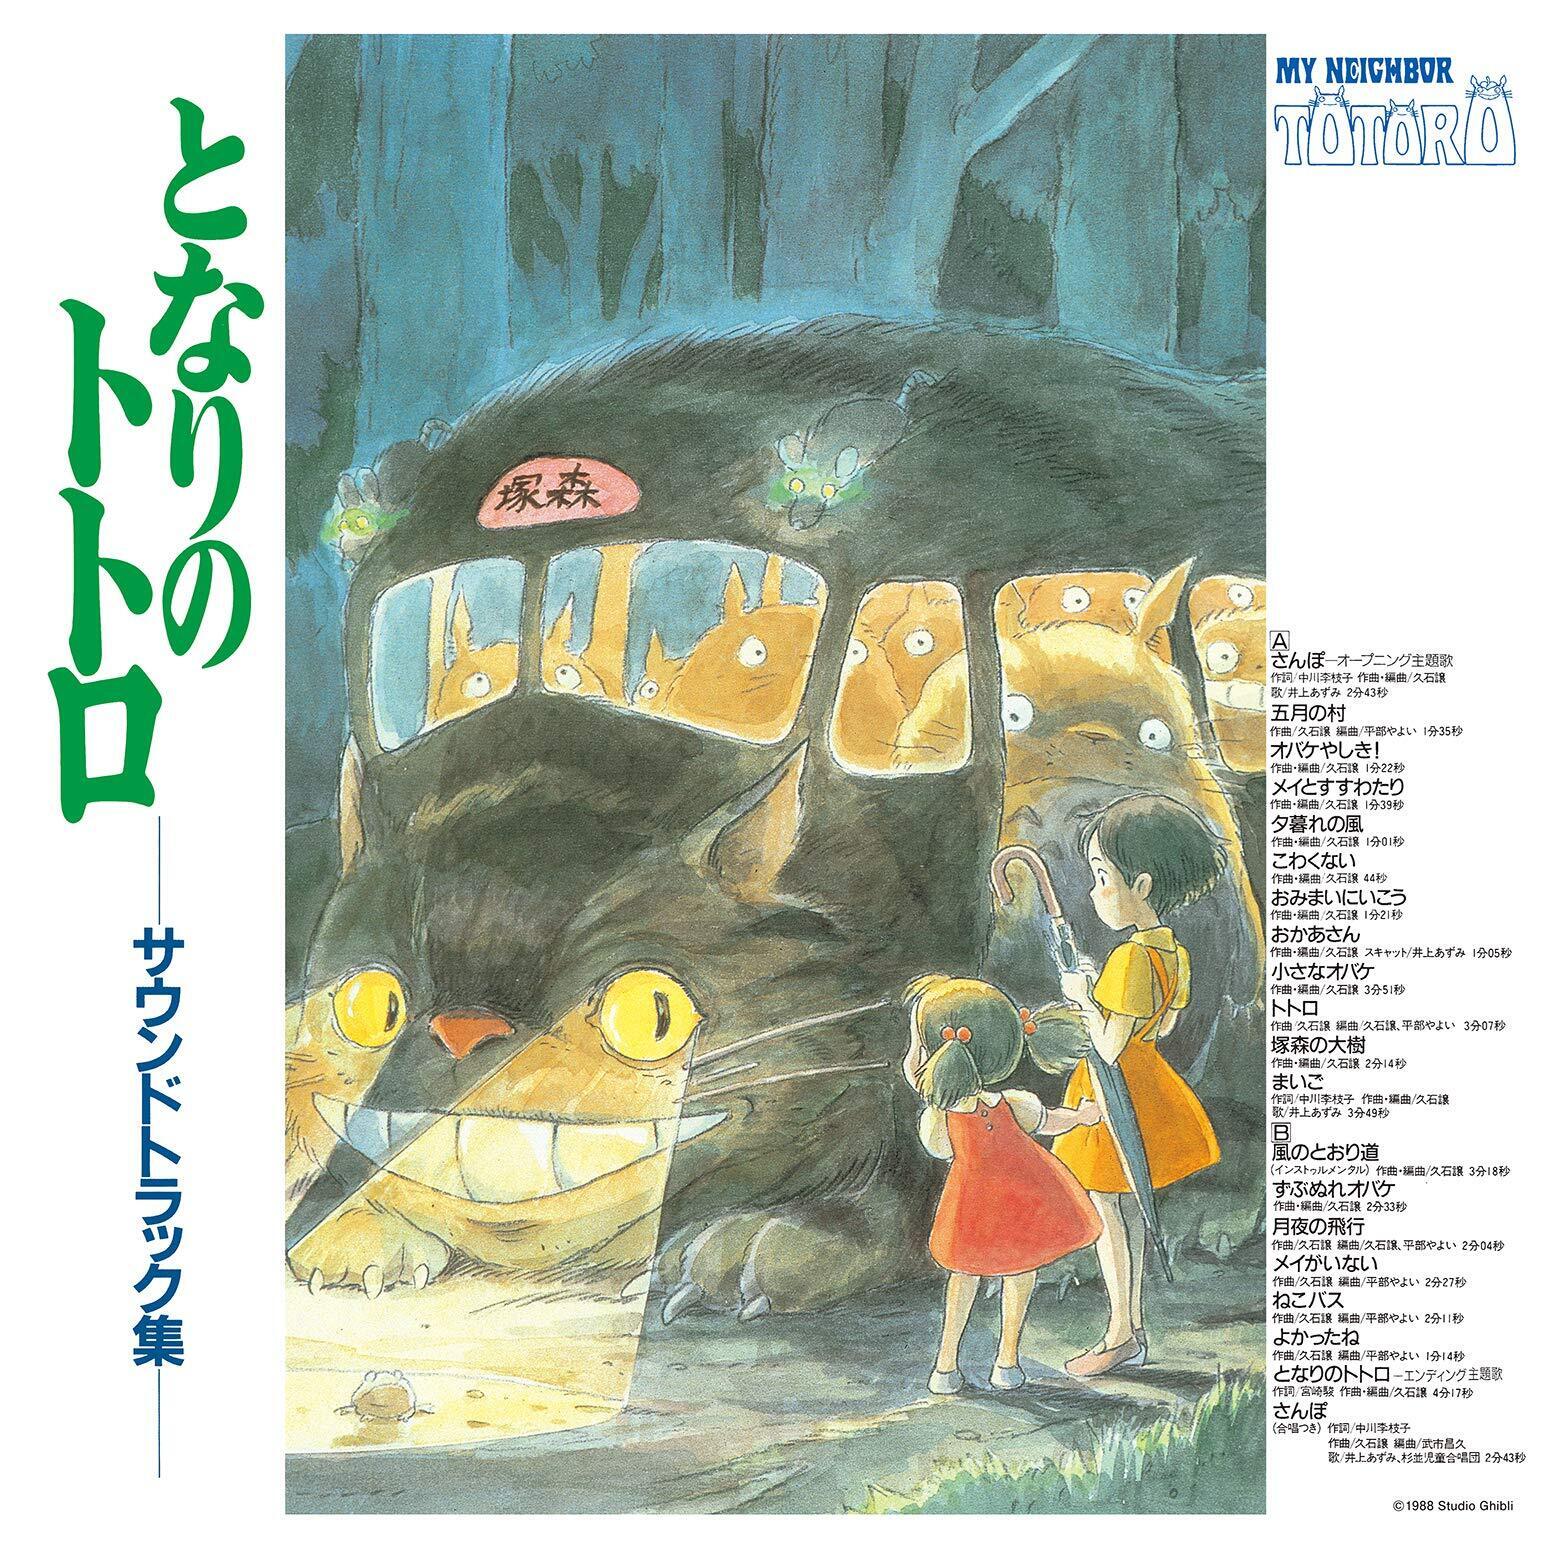 Поп Studio Ghibli Records OST - My Neighbor Totoro (Joe Hisaishi) (Black Vinyl LP) мой сосед хаяо артбук по мотивам творчества миядзаки